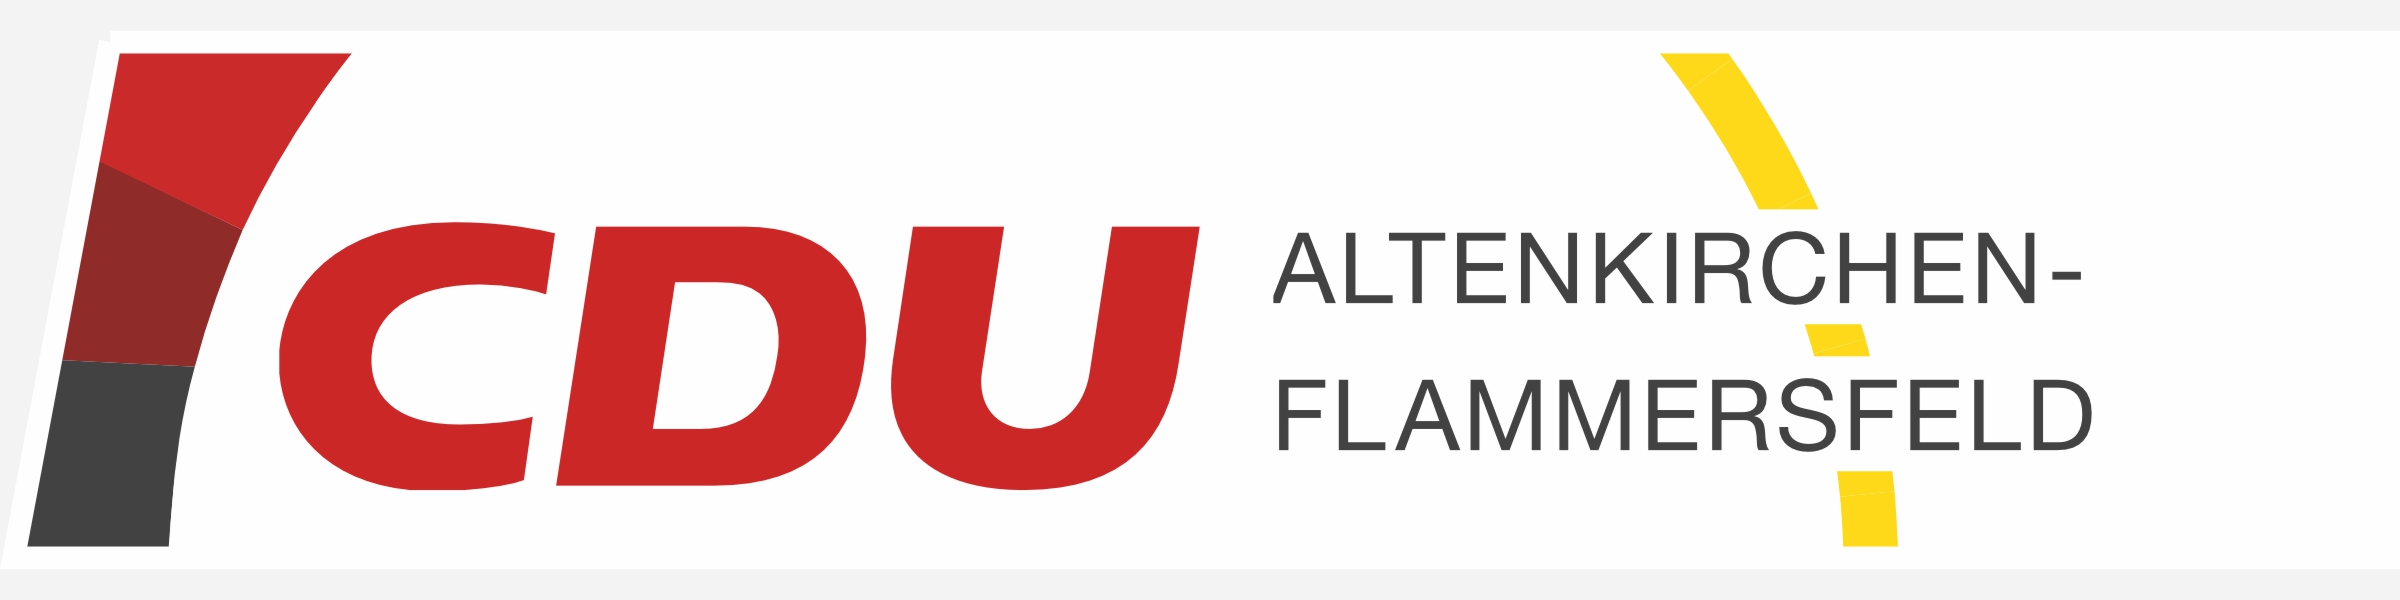 CDU Altenkirchen-Flammersfeld  logo